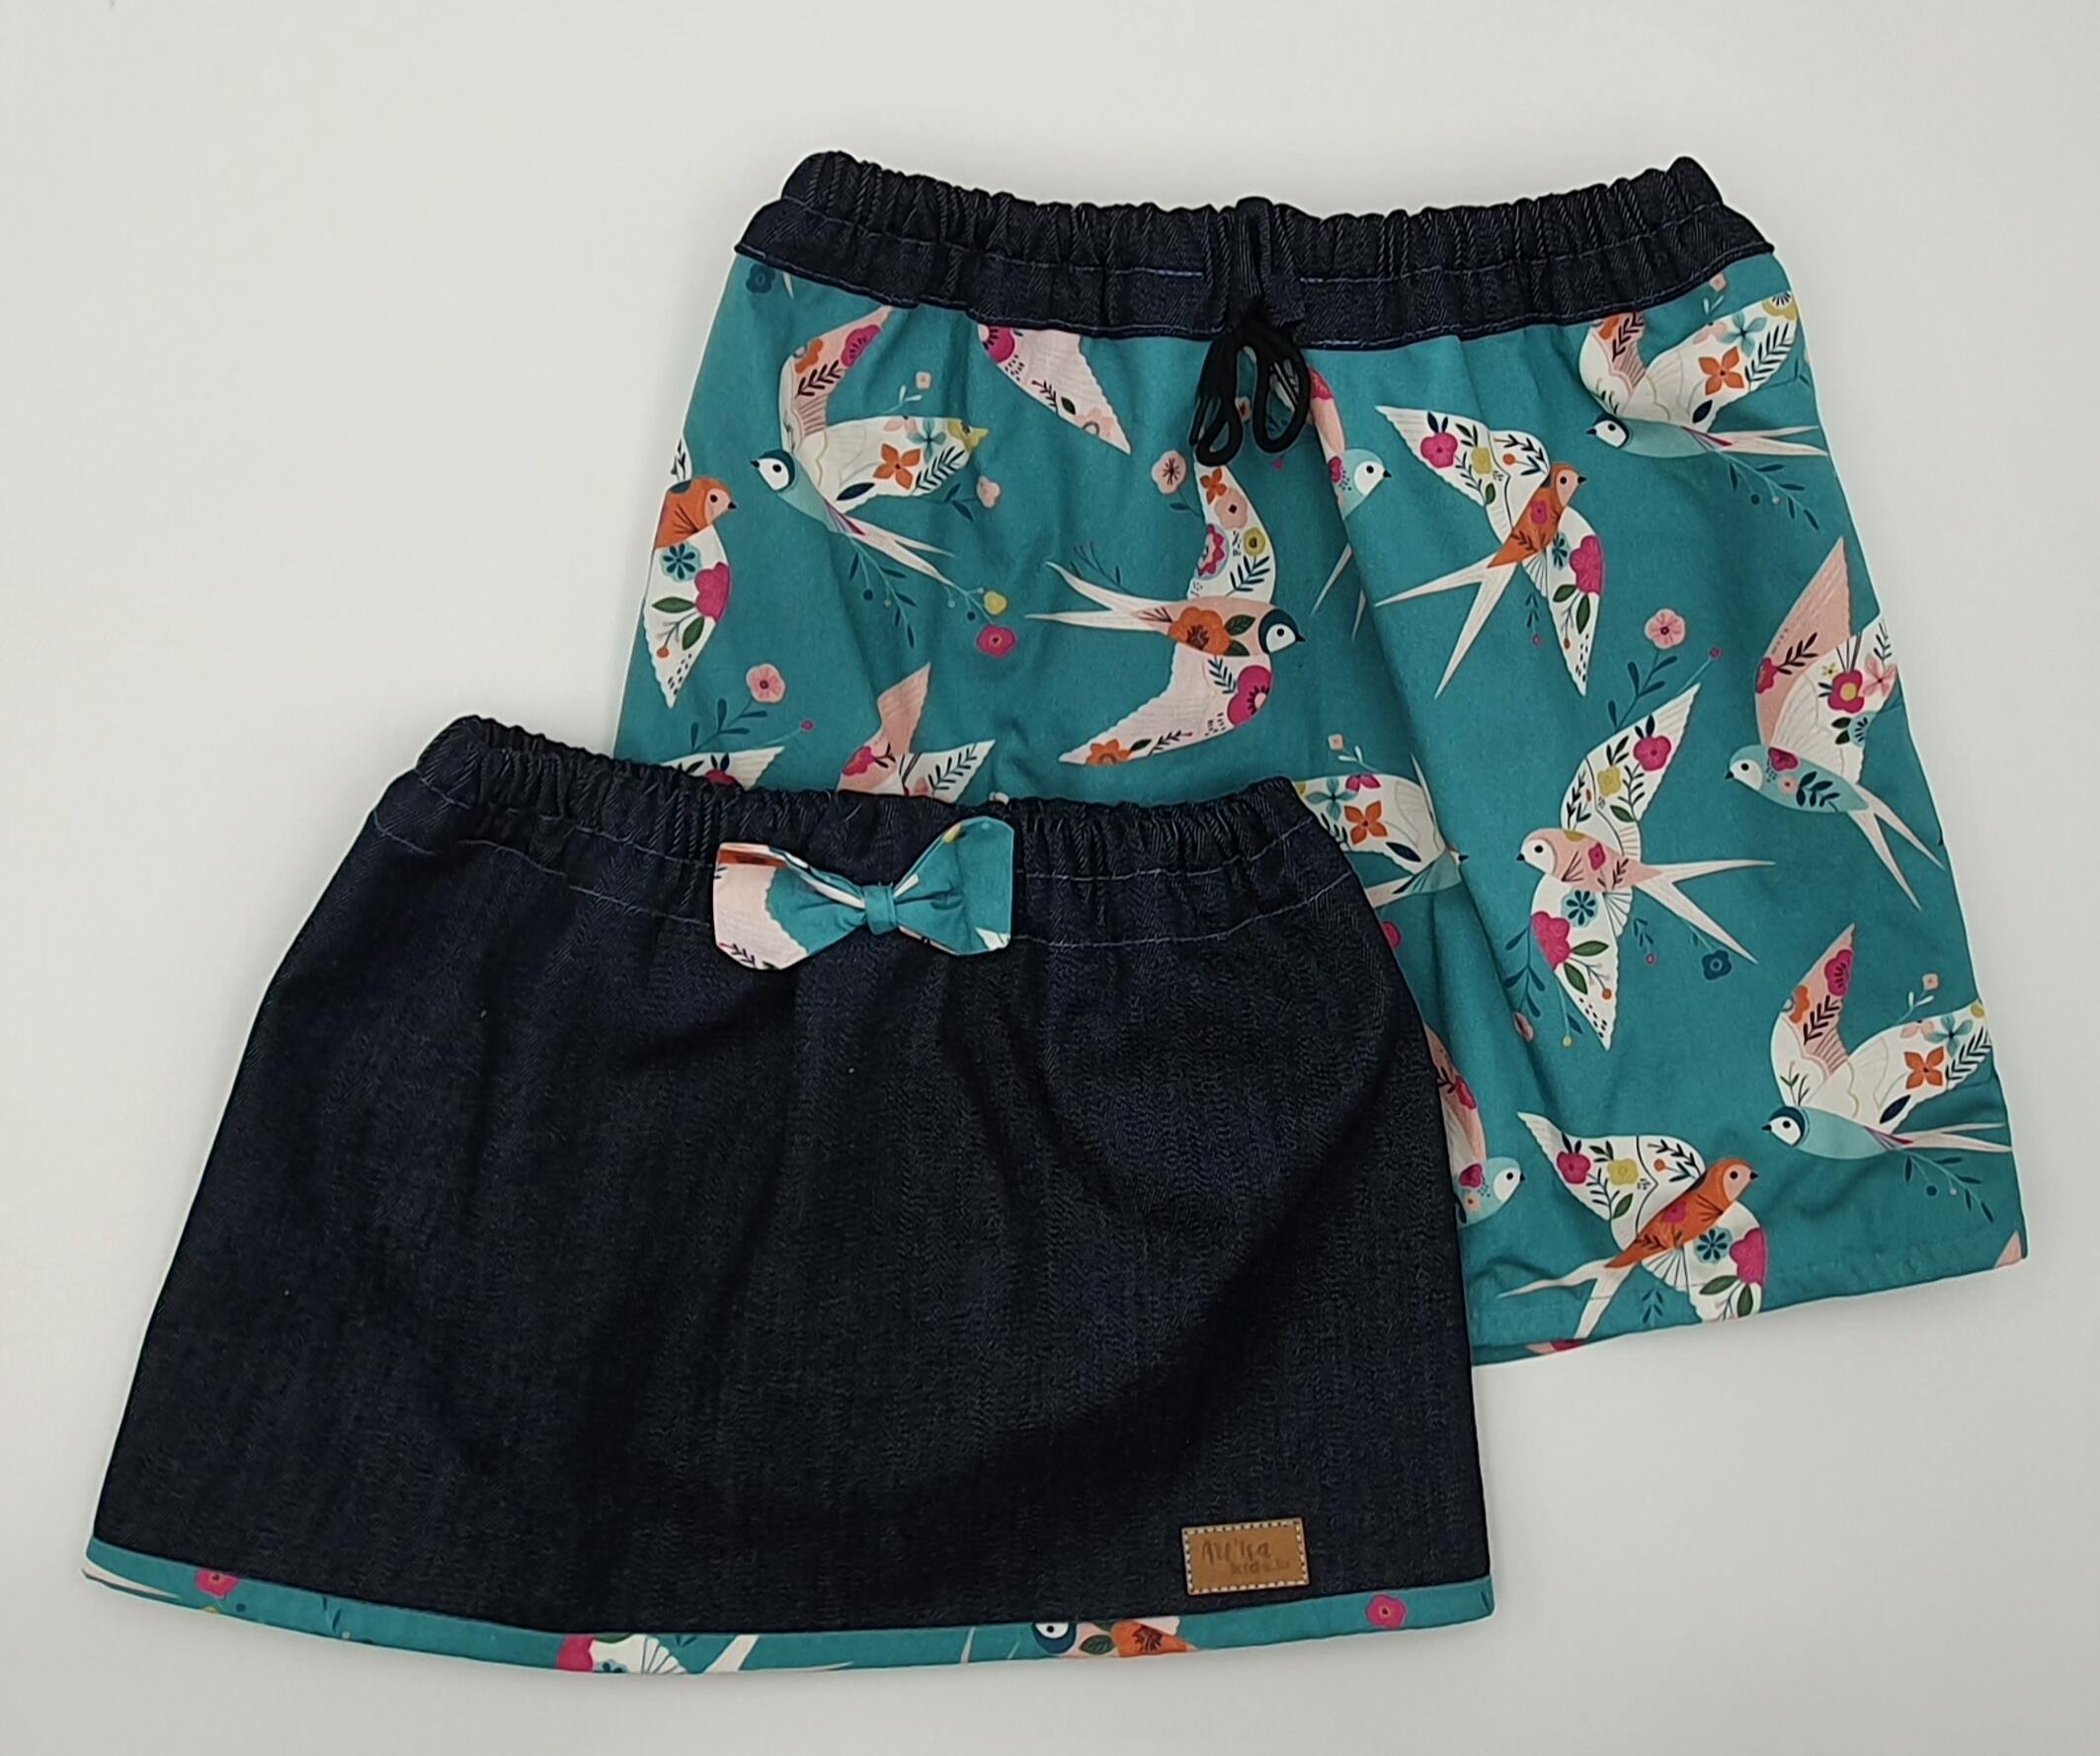 Reversible and evolutive "Hirondelles" bird skirt for children